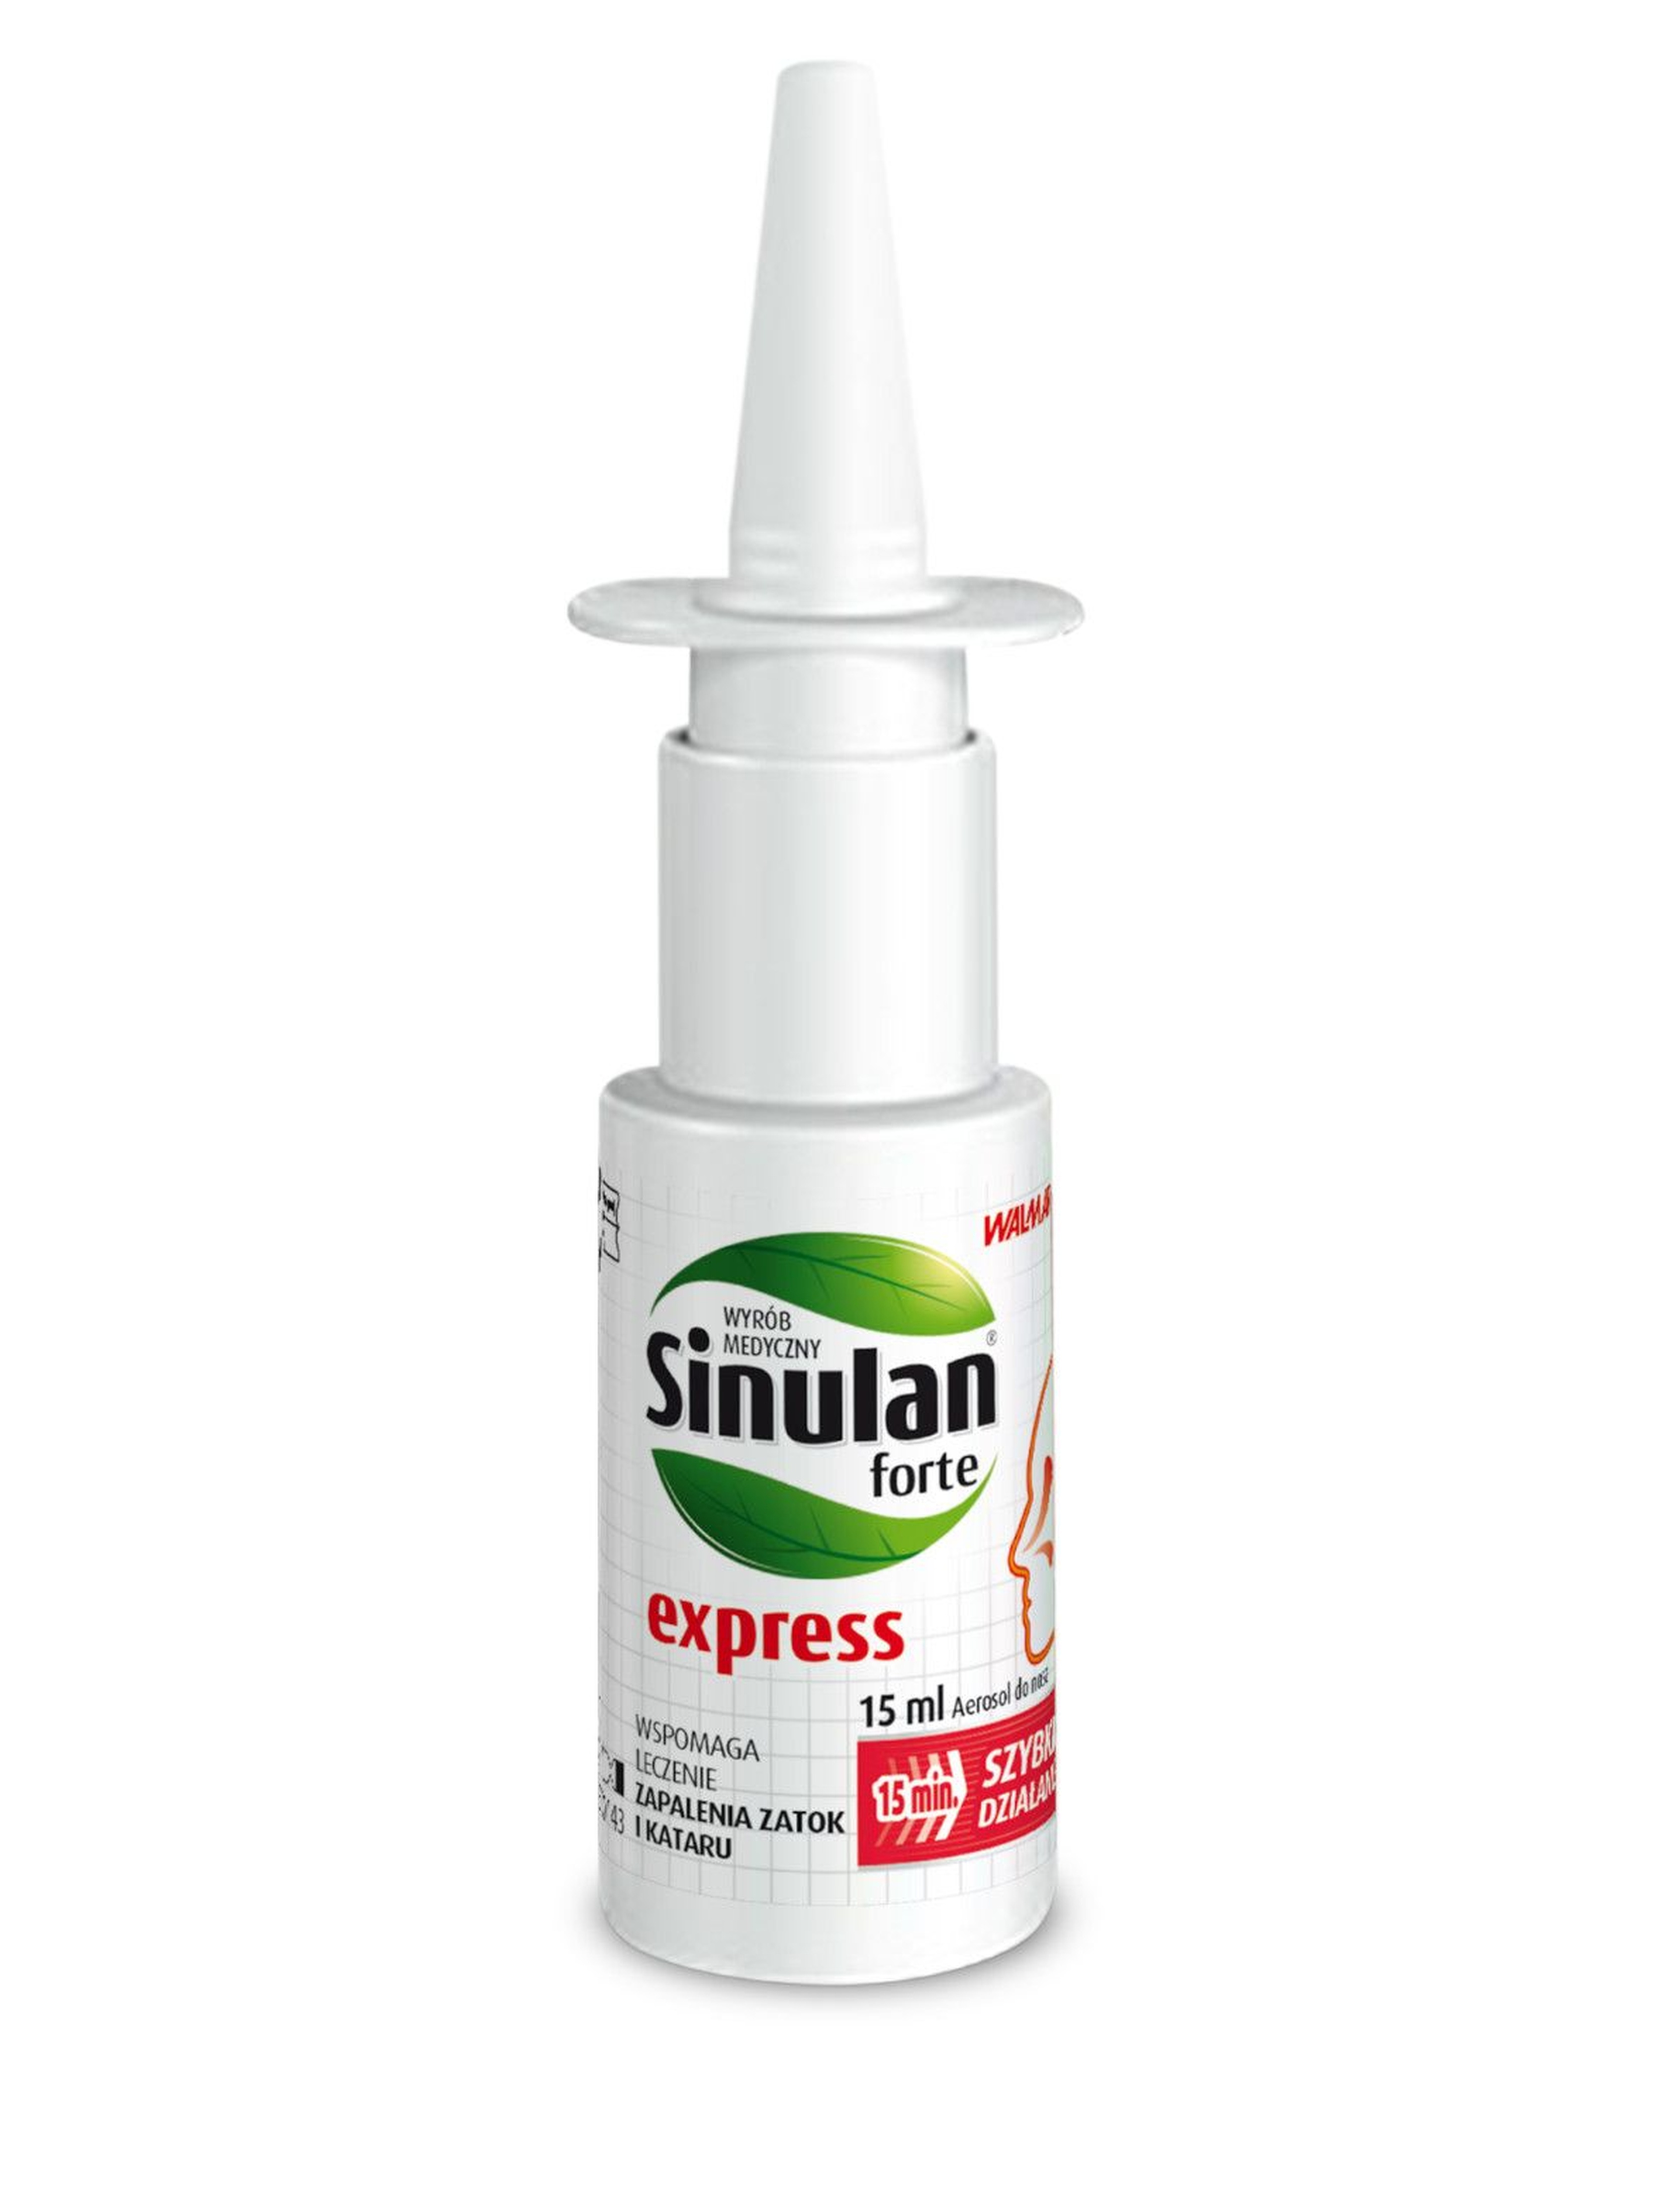 Sinulan express forte spray do nosa - zapalenie zatok i katar 15 ml wiek 12+